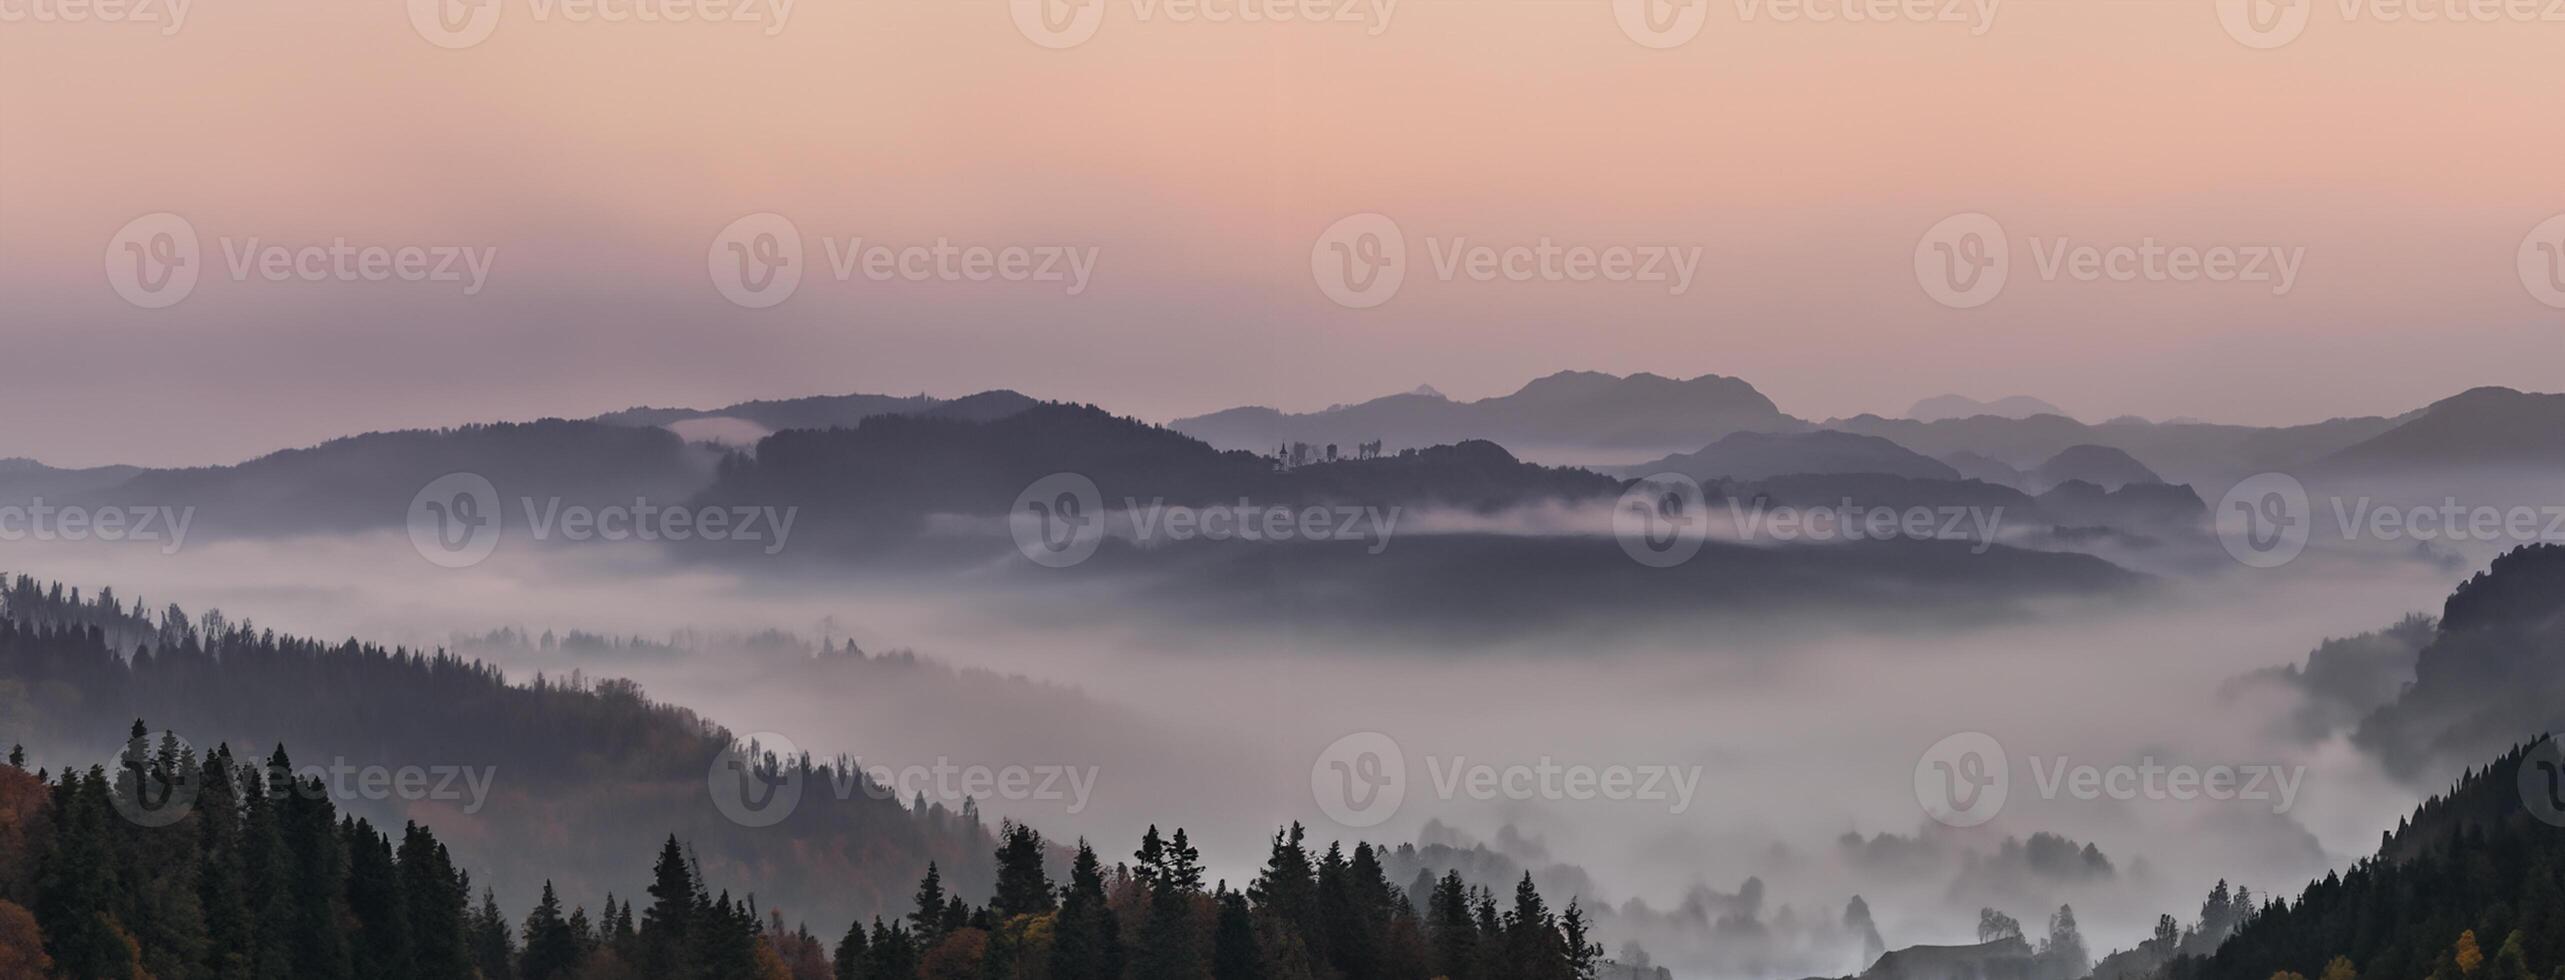 panorama- dimmig landskap på gryning över berg och dal foto